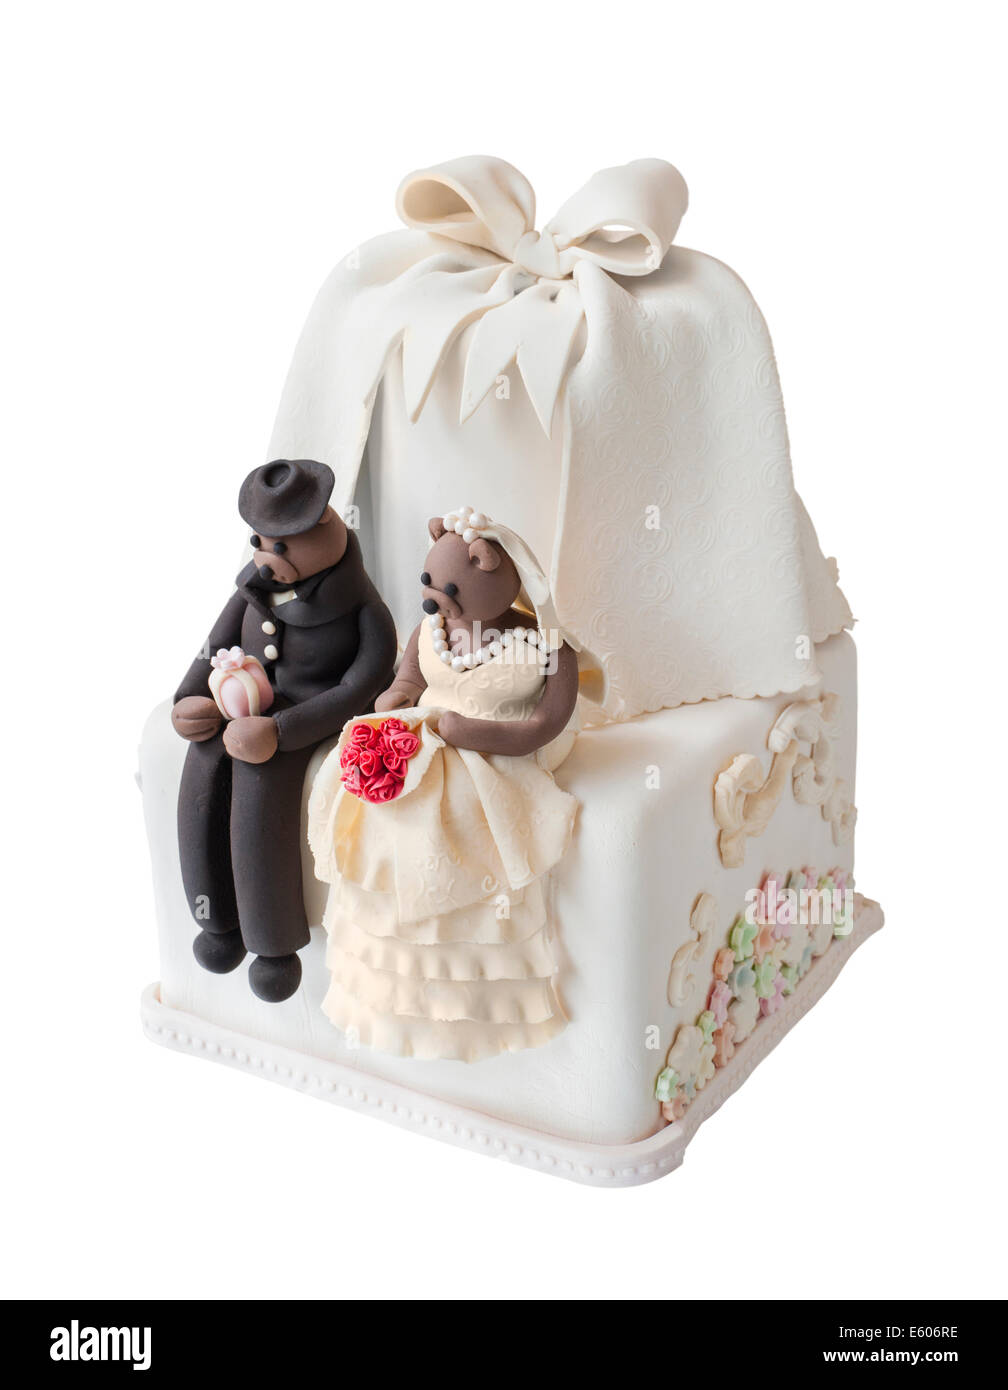 Gâteau de mariage avec bear doll Banque D'Images